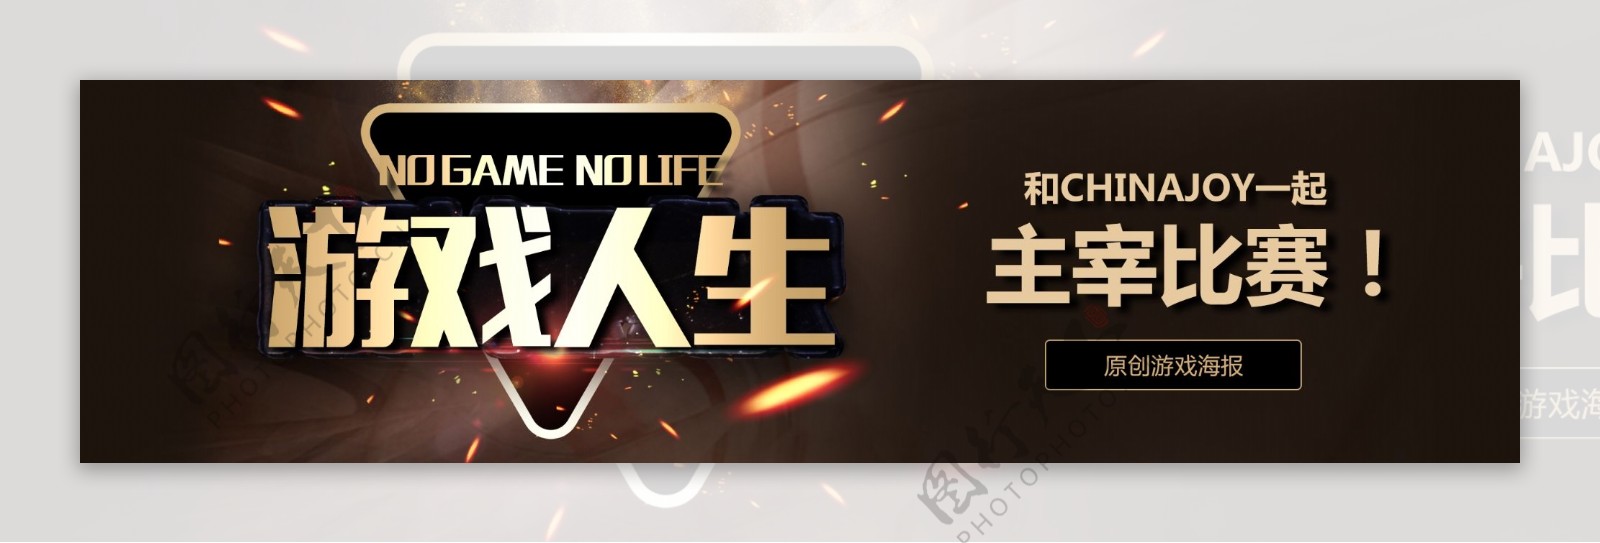 酷炫游戏电子竞技网吧banner模板设计